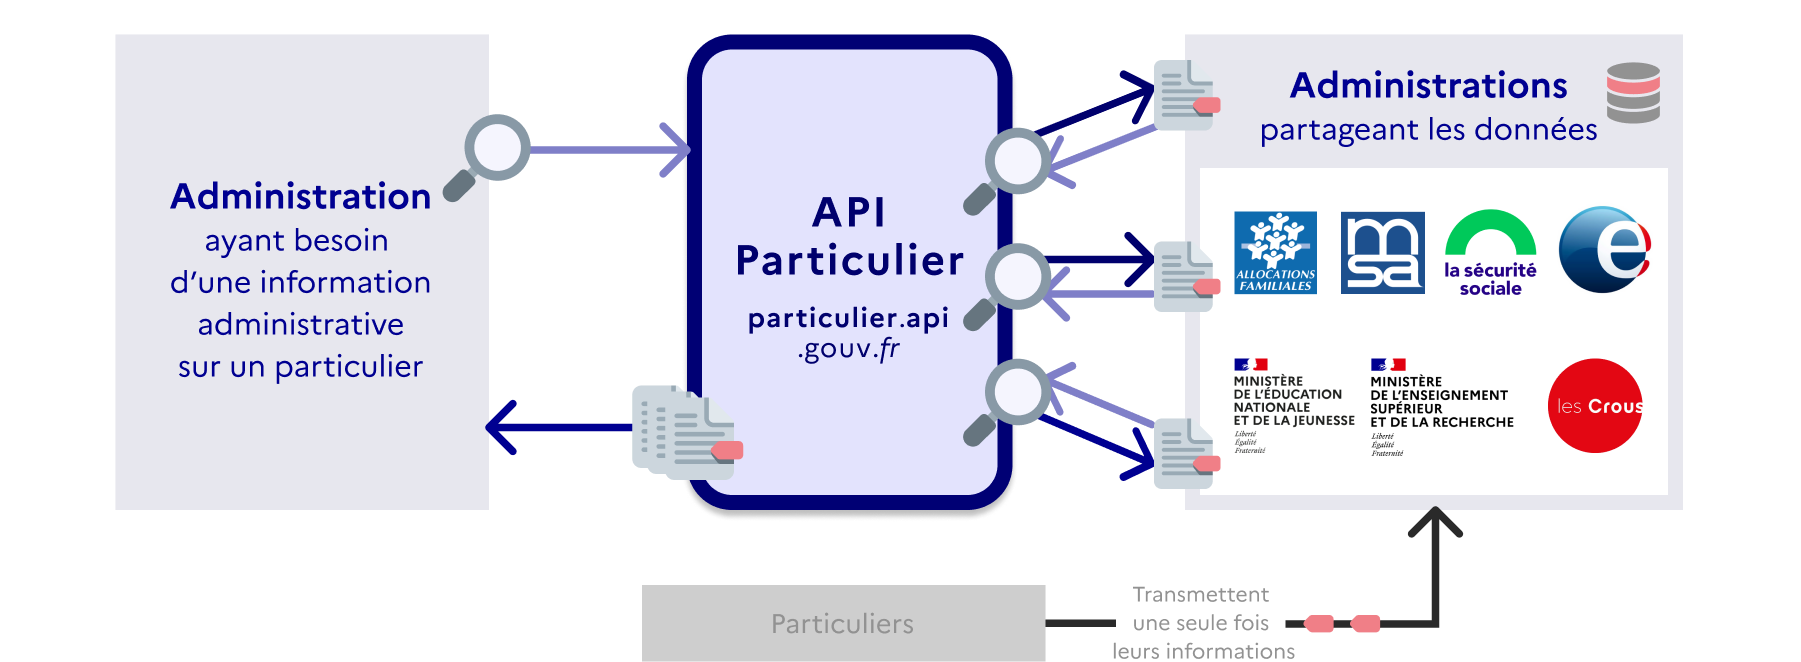 Fonctionnement API Particulier